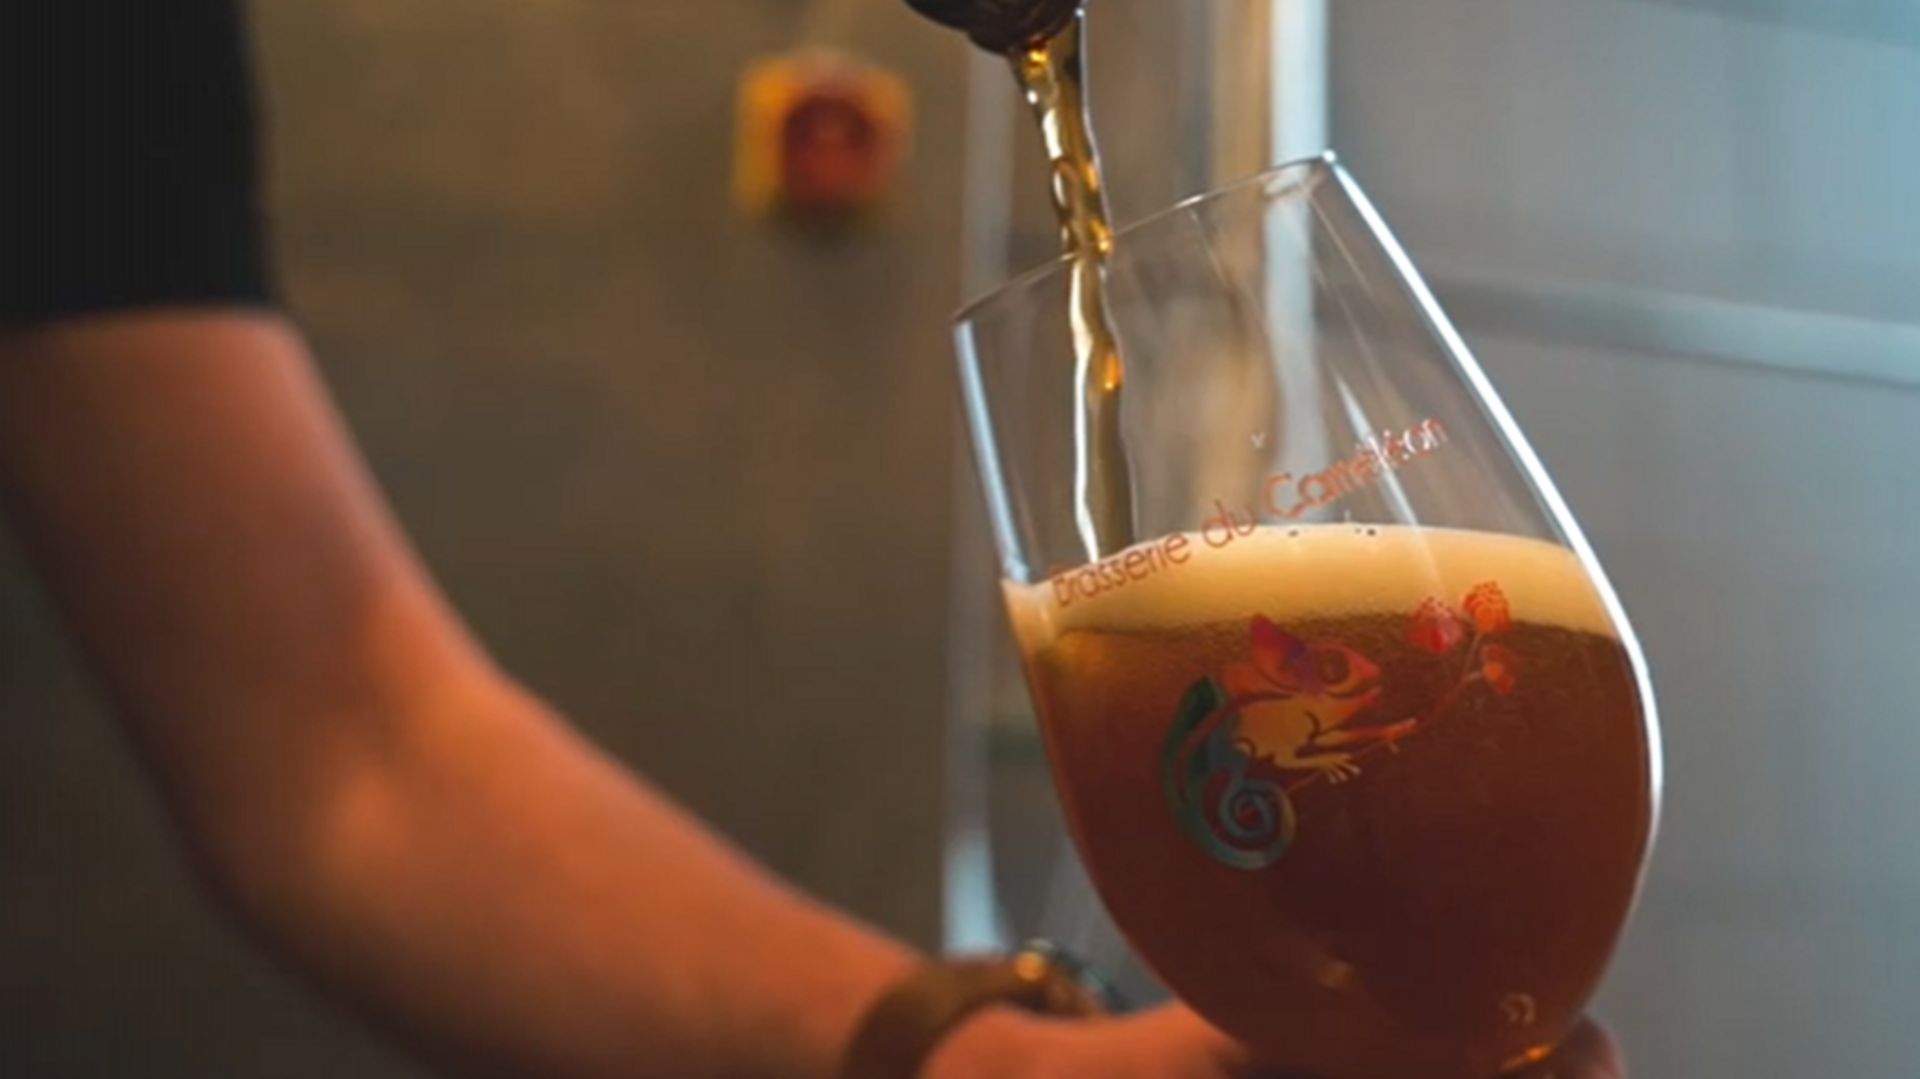 Les bières belges médaillées au concours international de Lyon - Bières &  Brasseries